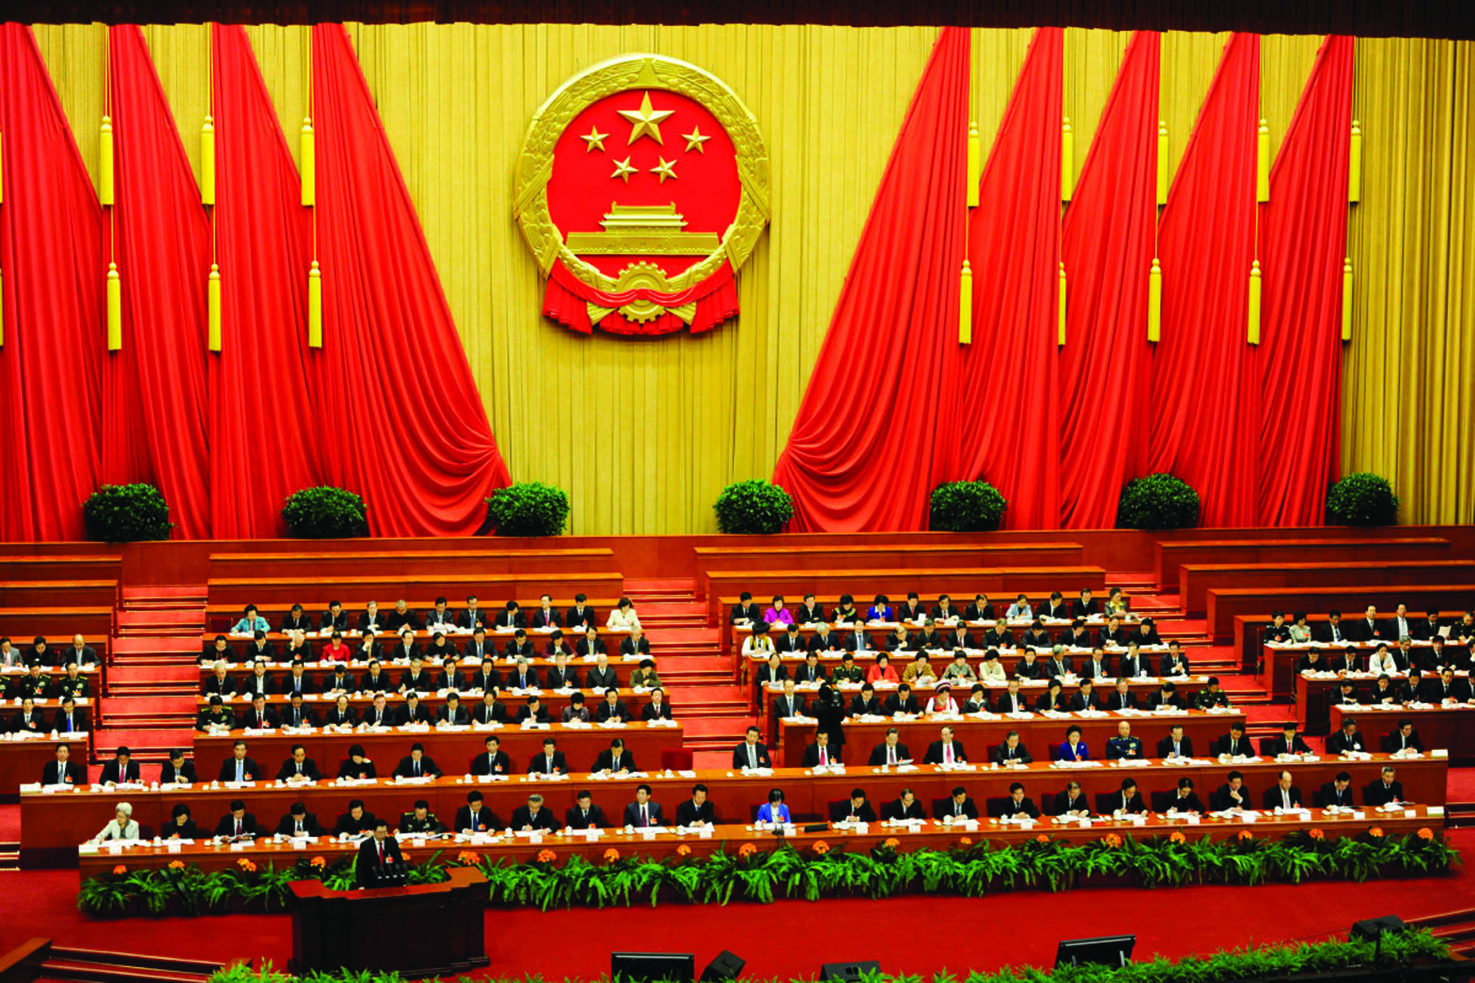 Punidos mais de 260 mil funcionários por violarem código do Partido Comunista Chinês